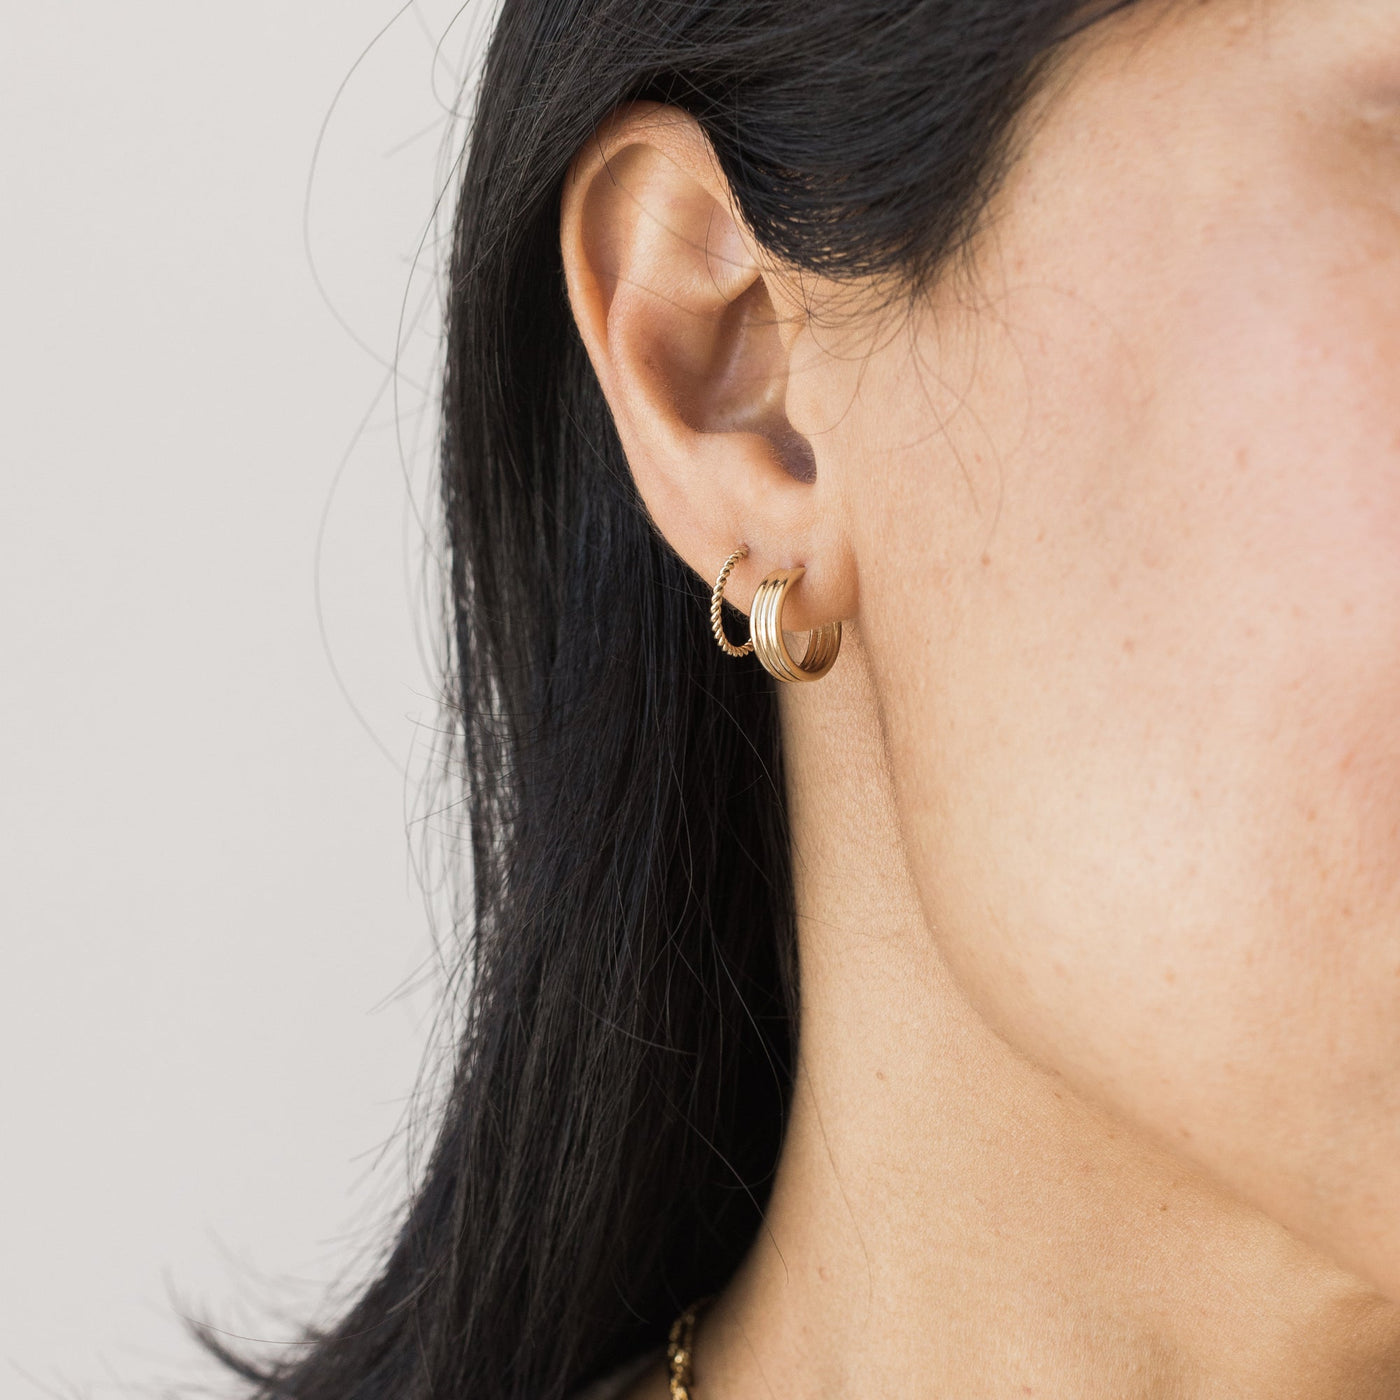 Braided Hoop Earrings | Simple & Dainty Jewelry